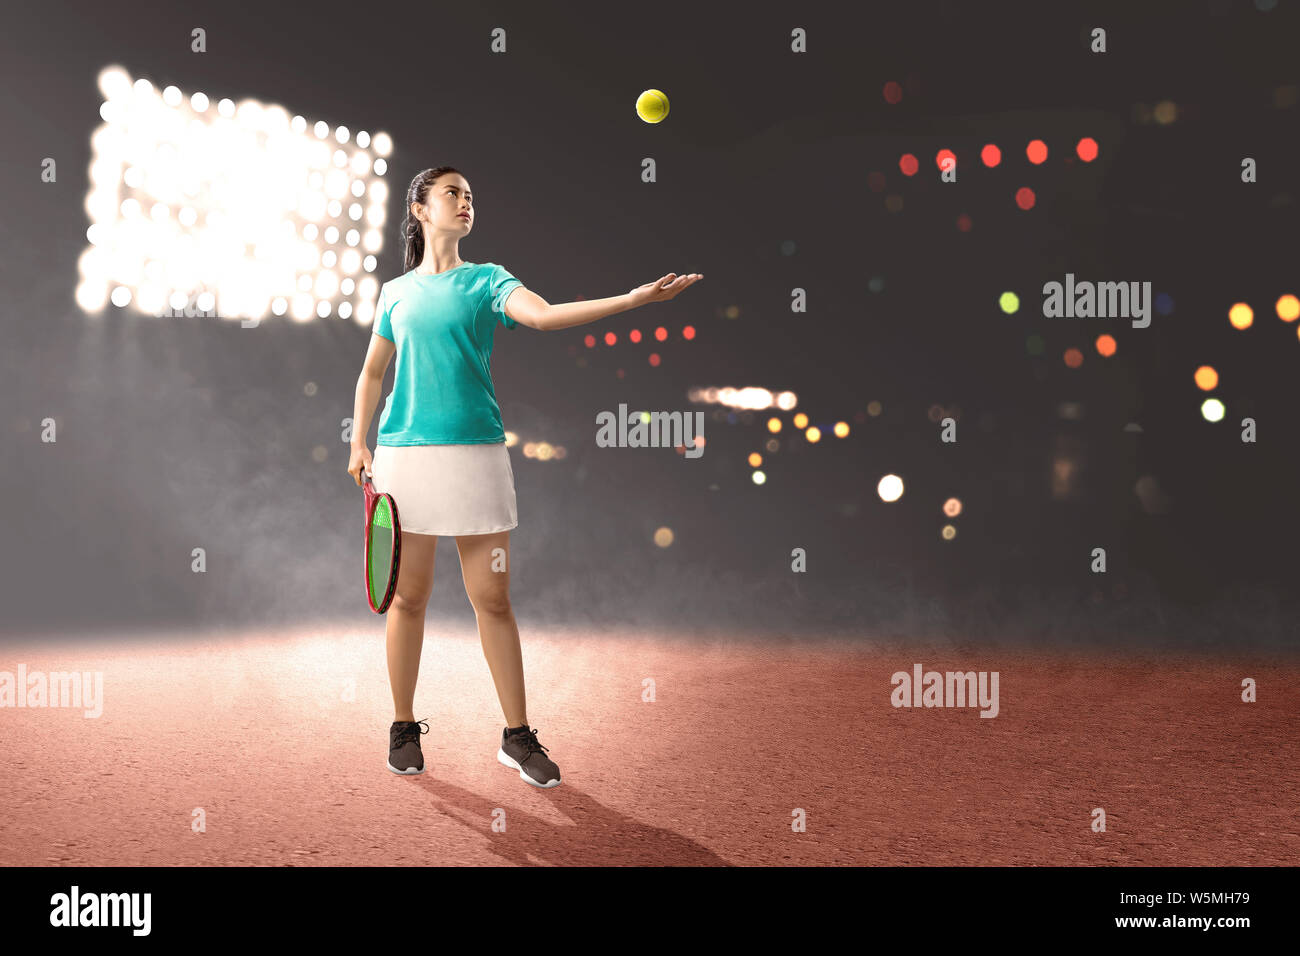 Femme Asiatique avec une raquette de tennis dans ses mains, prêt à servir de poste sur fond projecteurs Banque D'Images